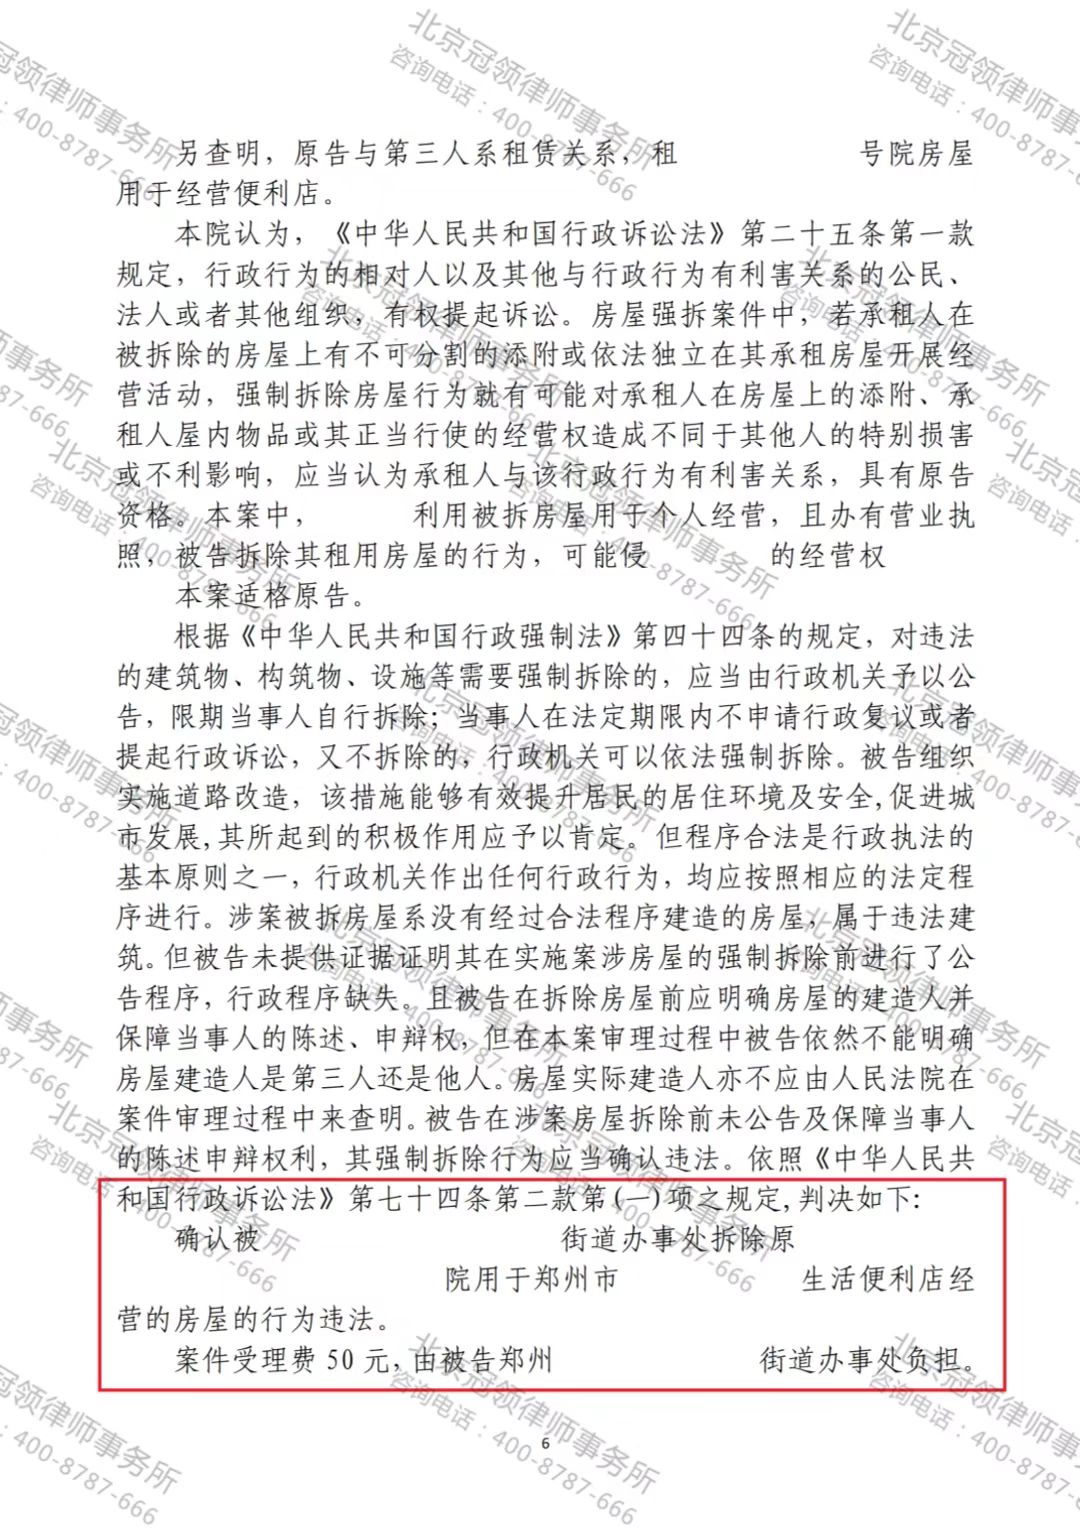 冠领律师代理的河南郑州确认拆违违法案胜诉-图2